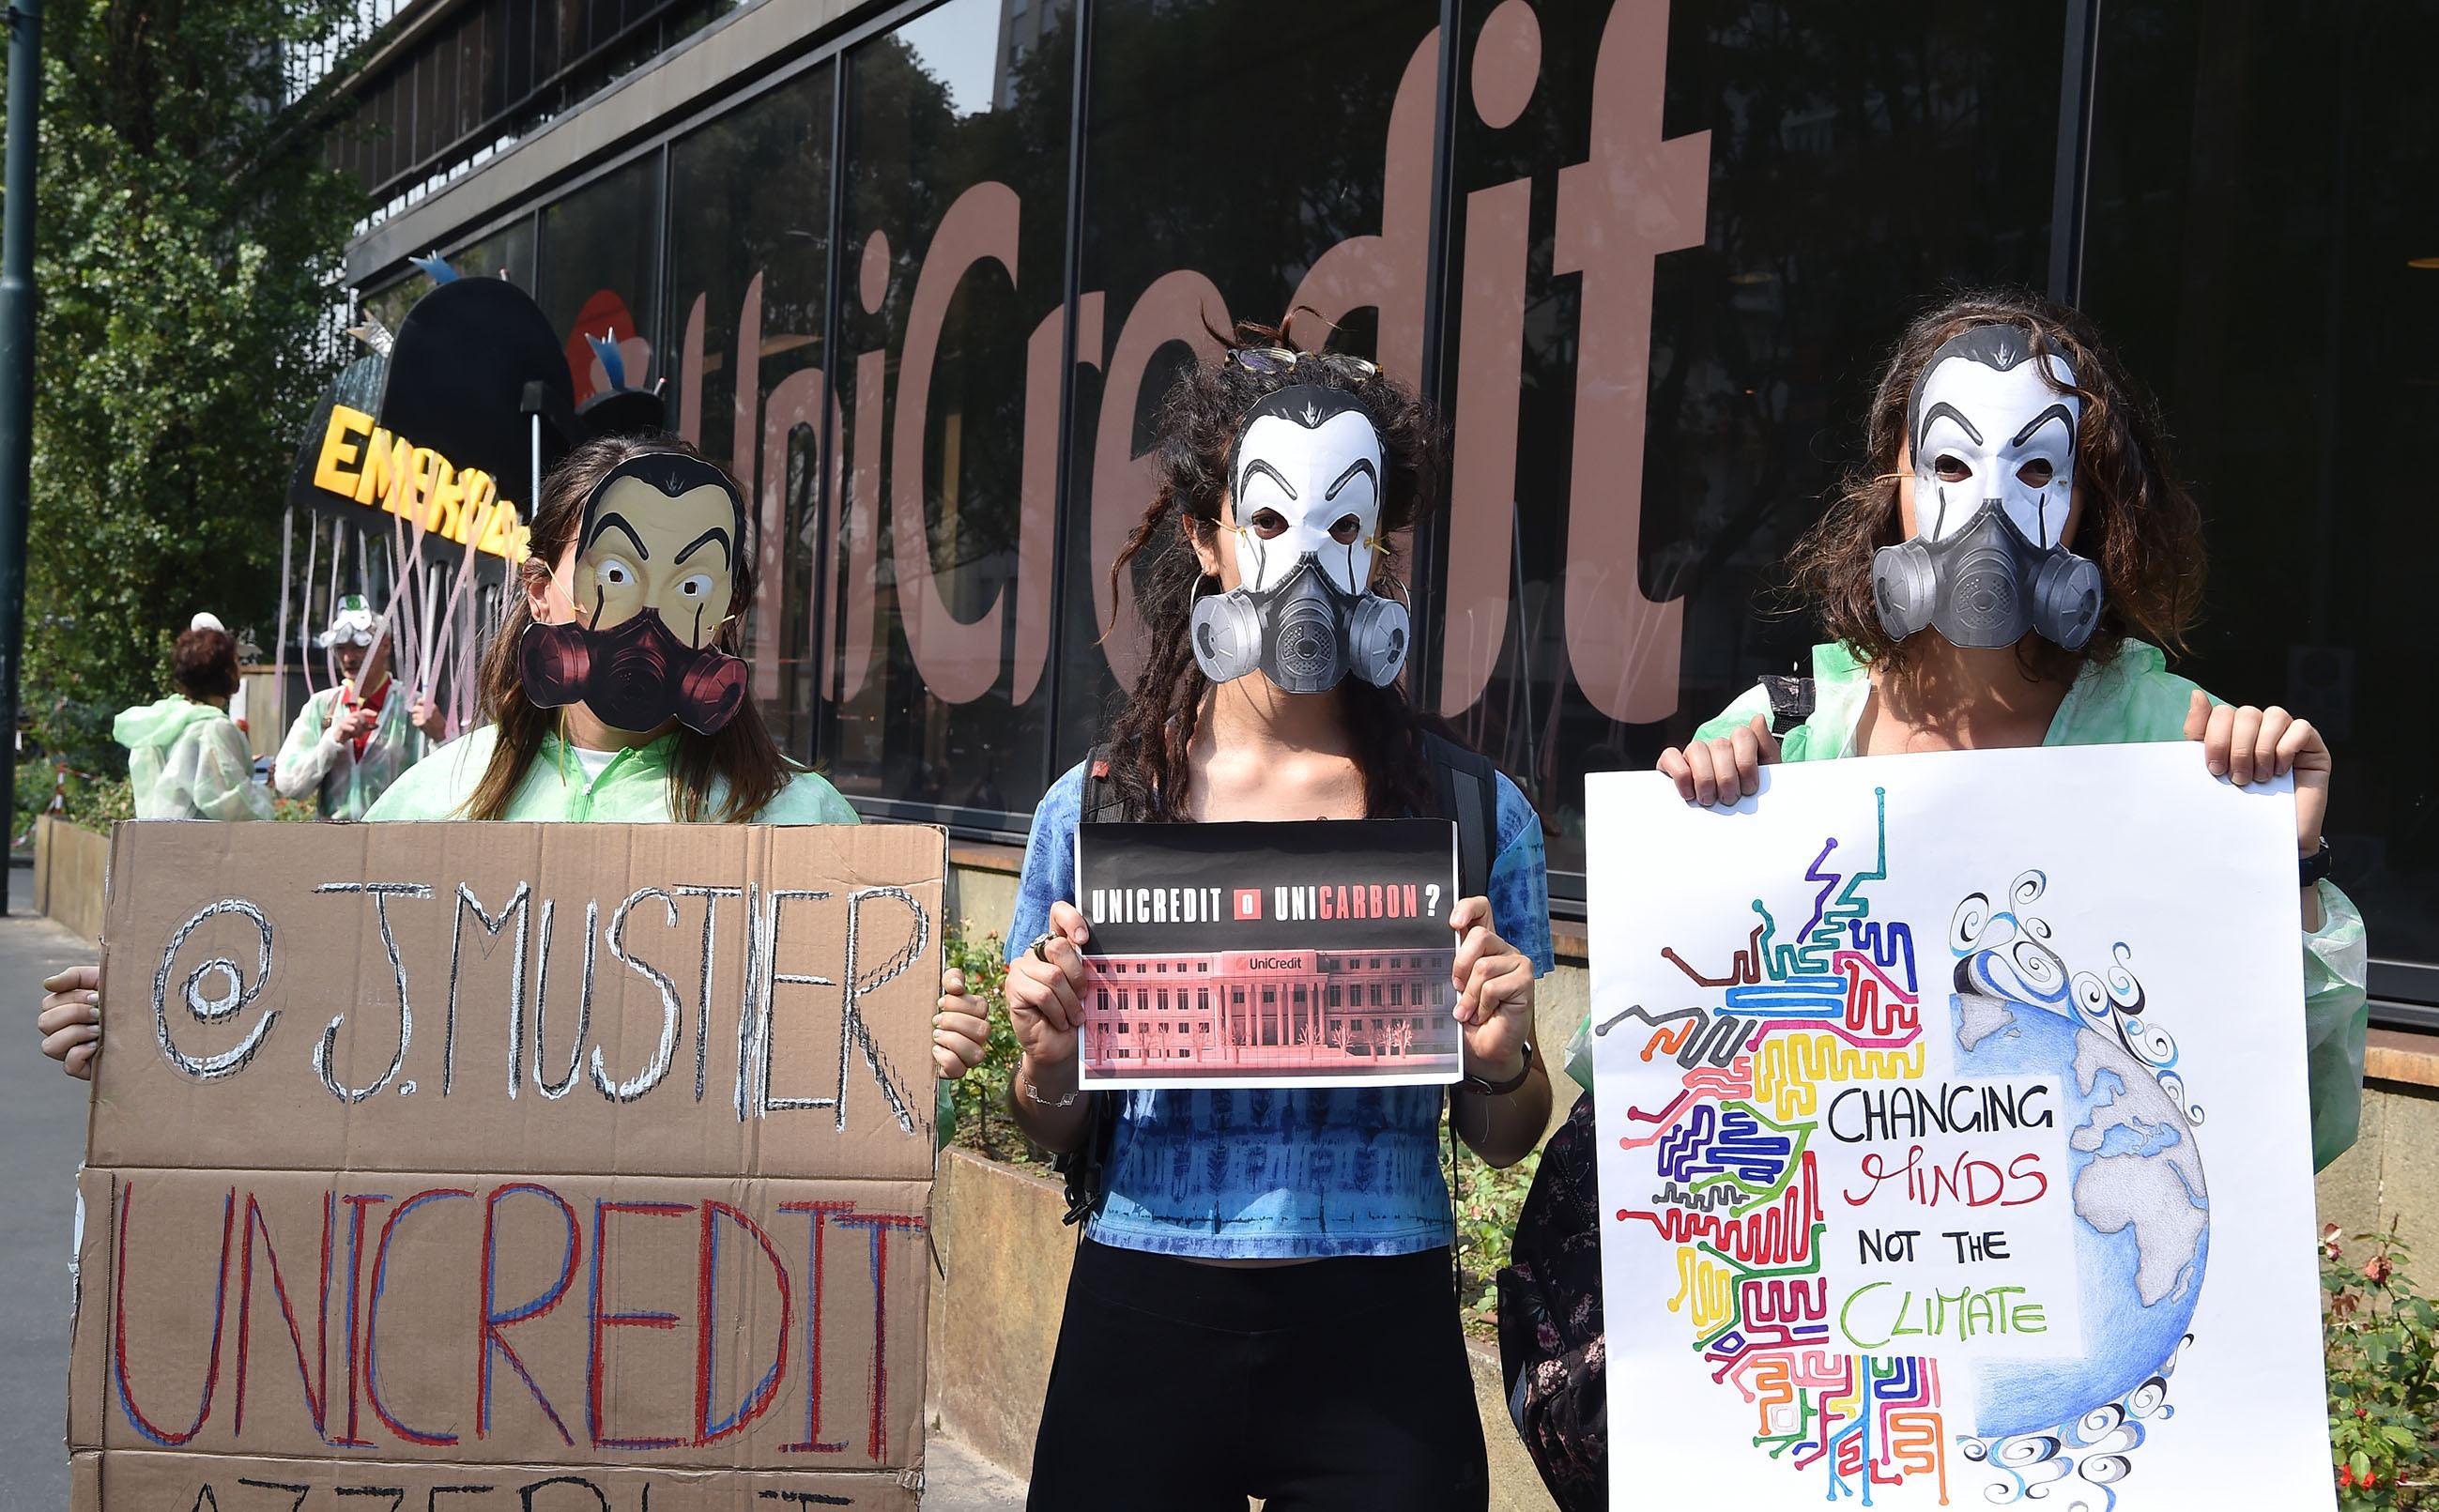 Gli attivisti di Friday for future sotto la sede Unicredit con tute e maschere che ricordano la serie tv 